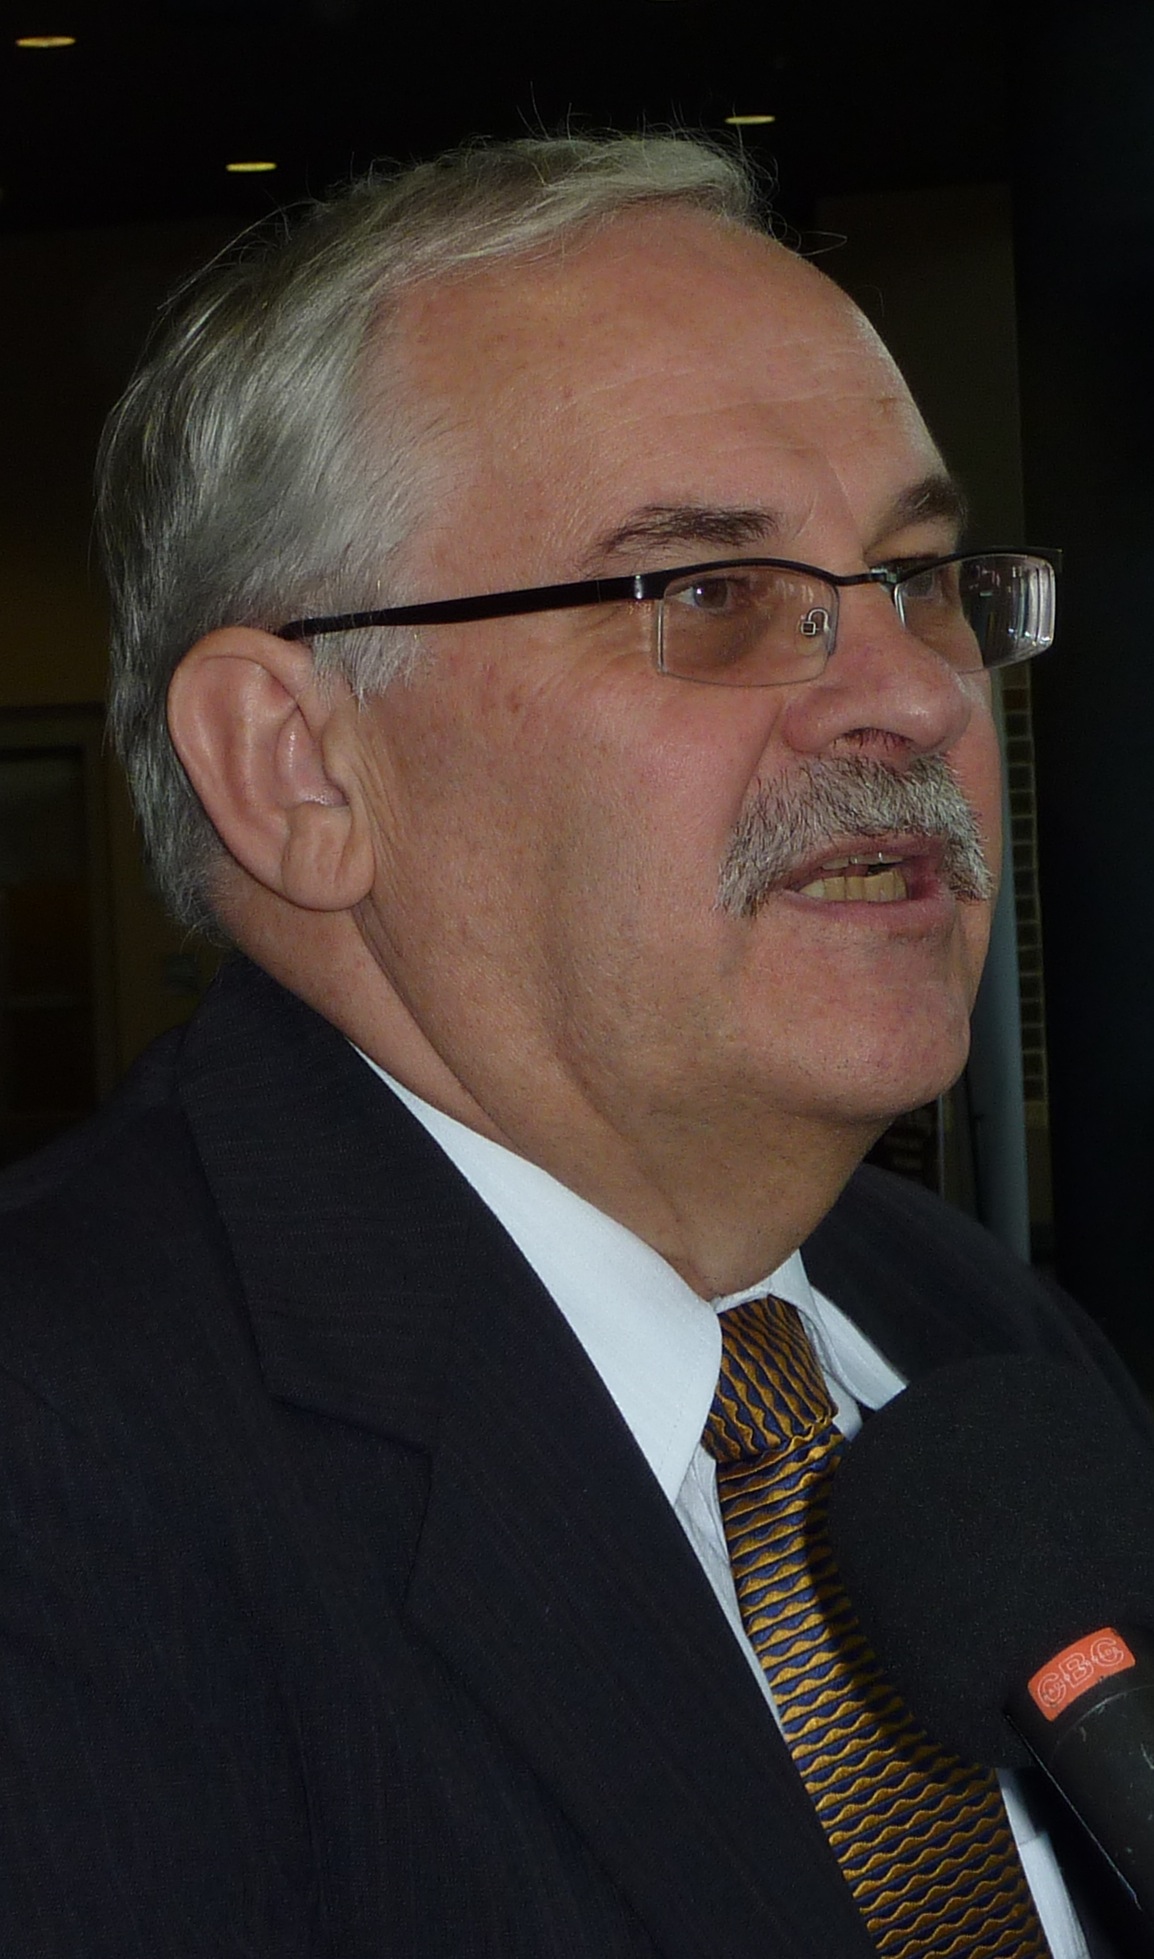 Former Alberta Health Services CEO Stephen Duckett